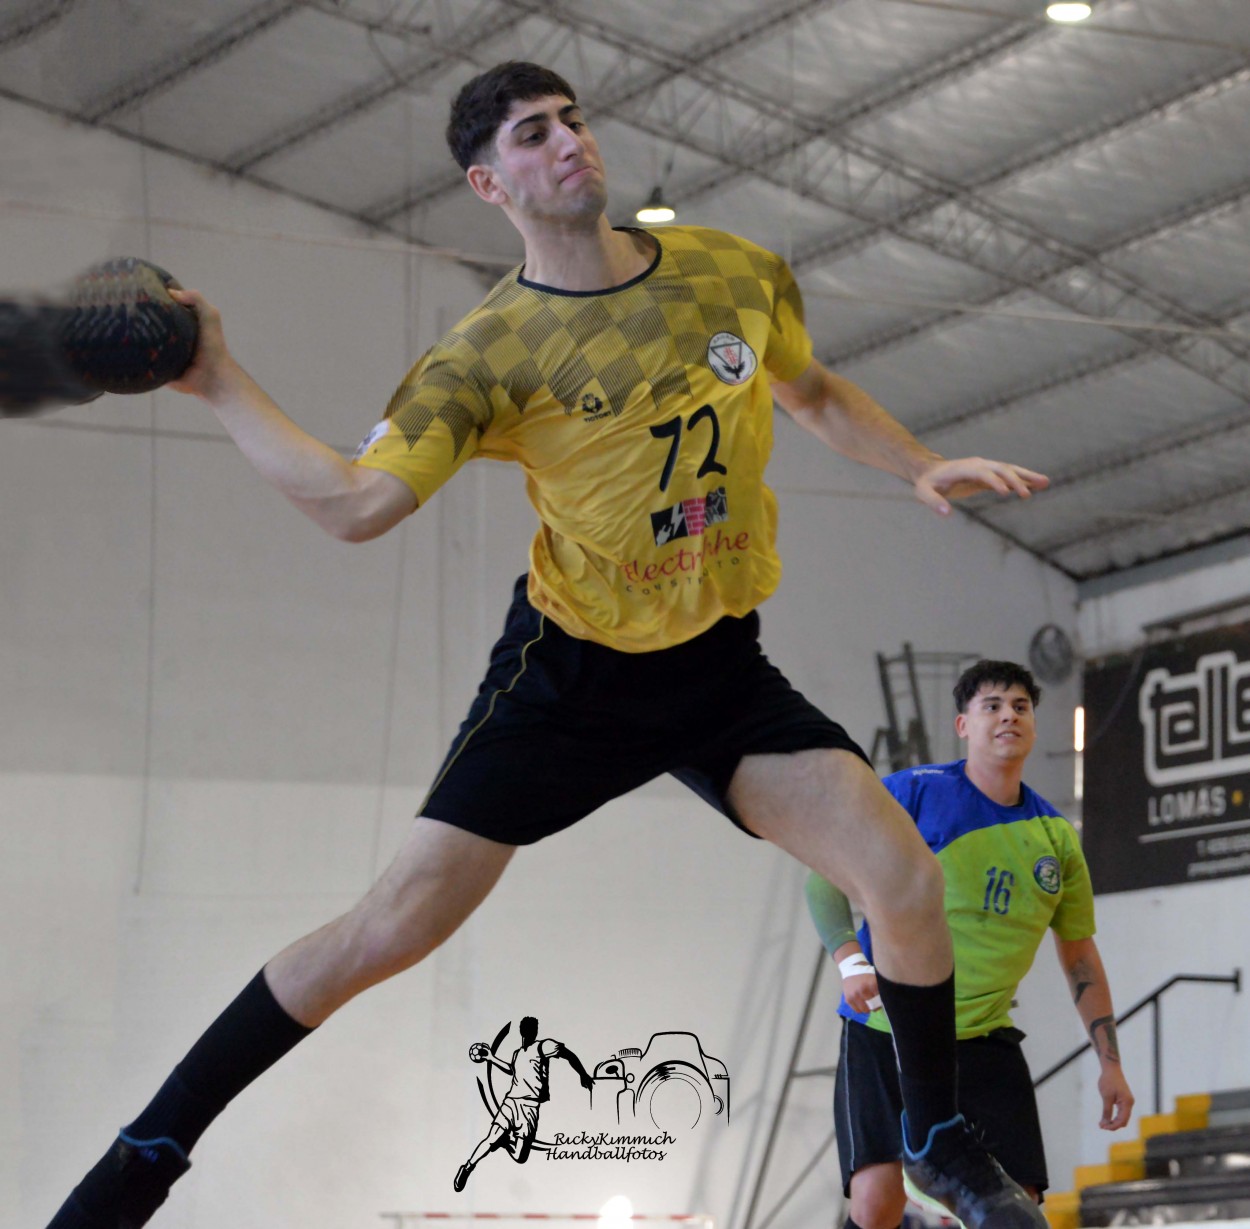 "Handball Junior" de Ricky Kimmich